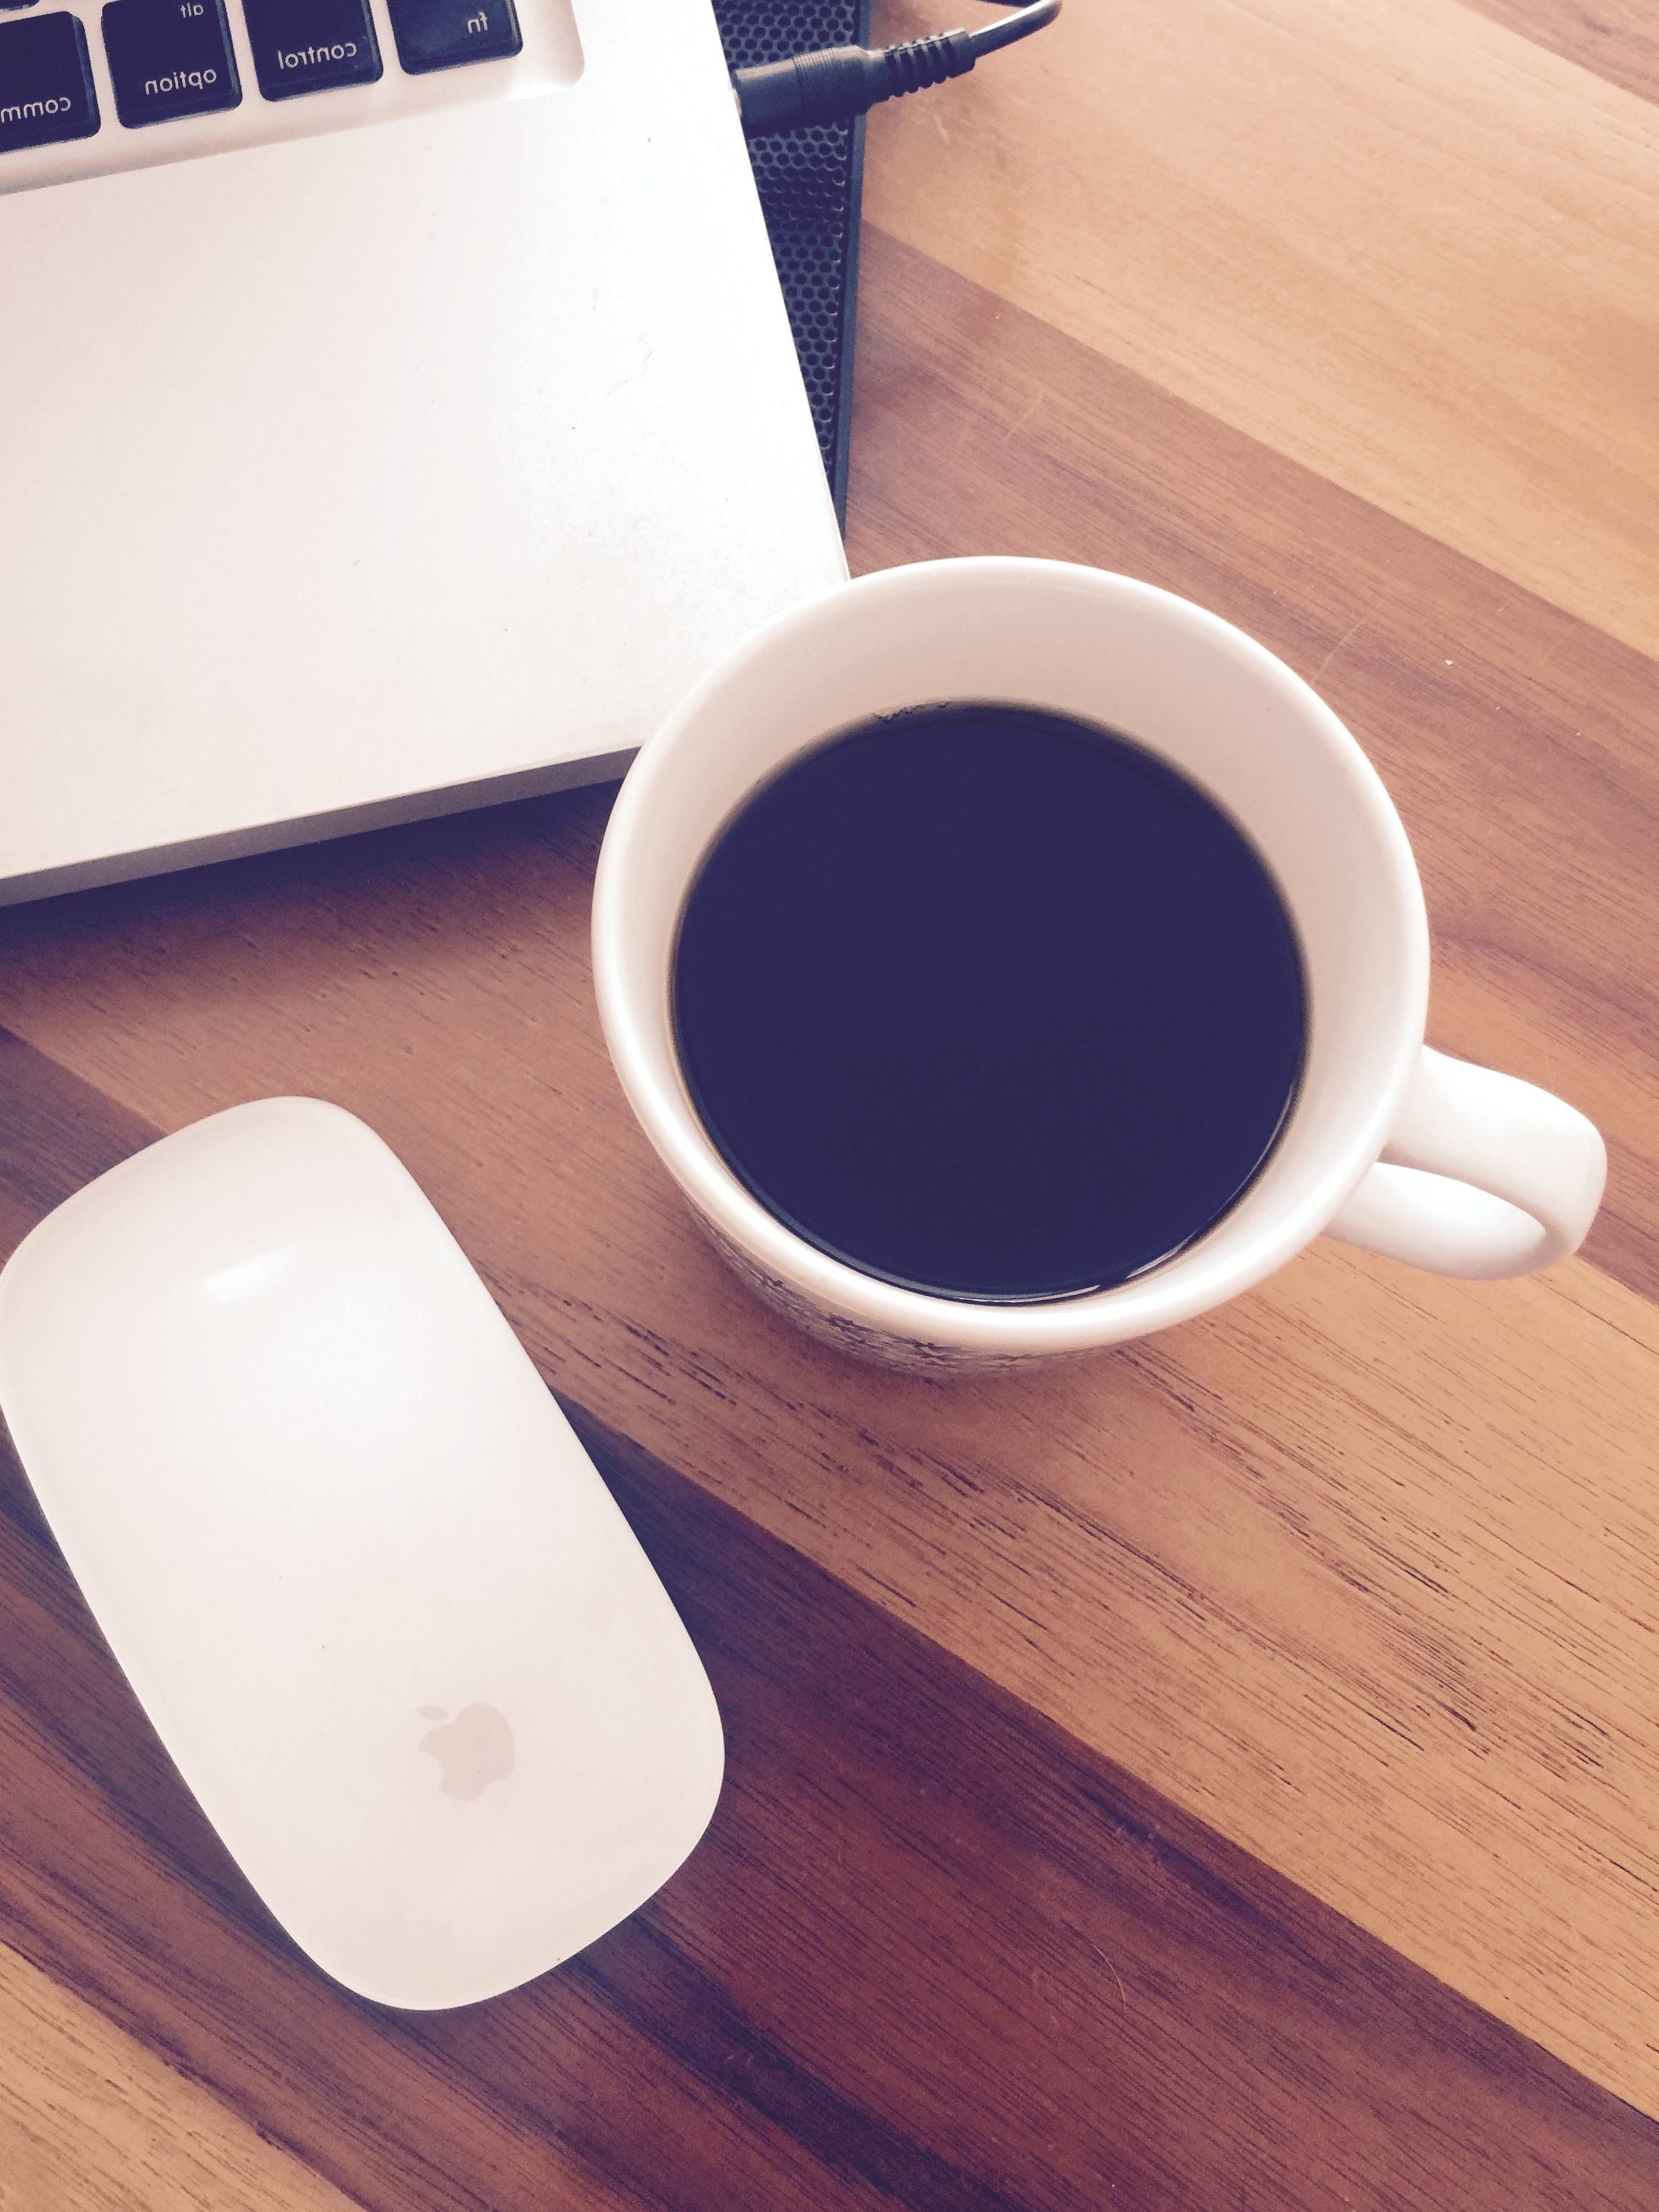 Foto gratis: tazza di caffè, ufficio, caffè, tastiera del computer